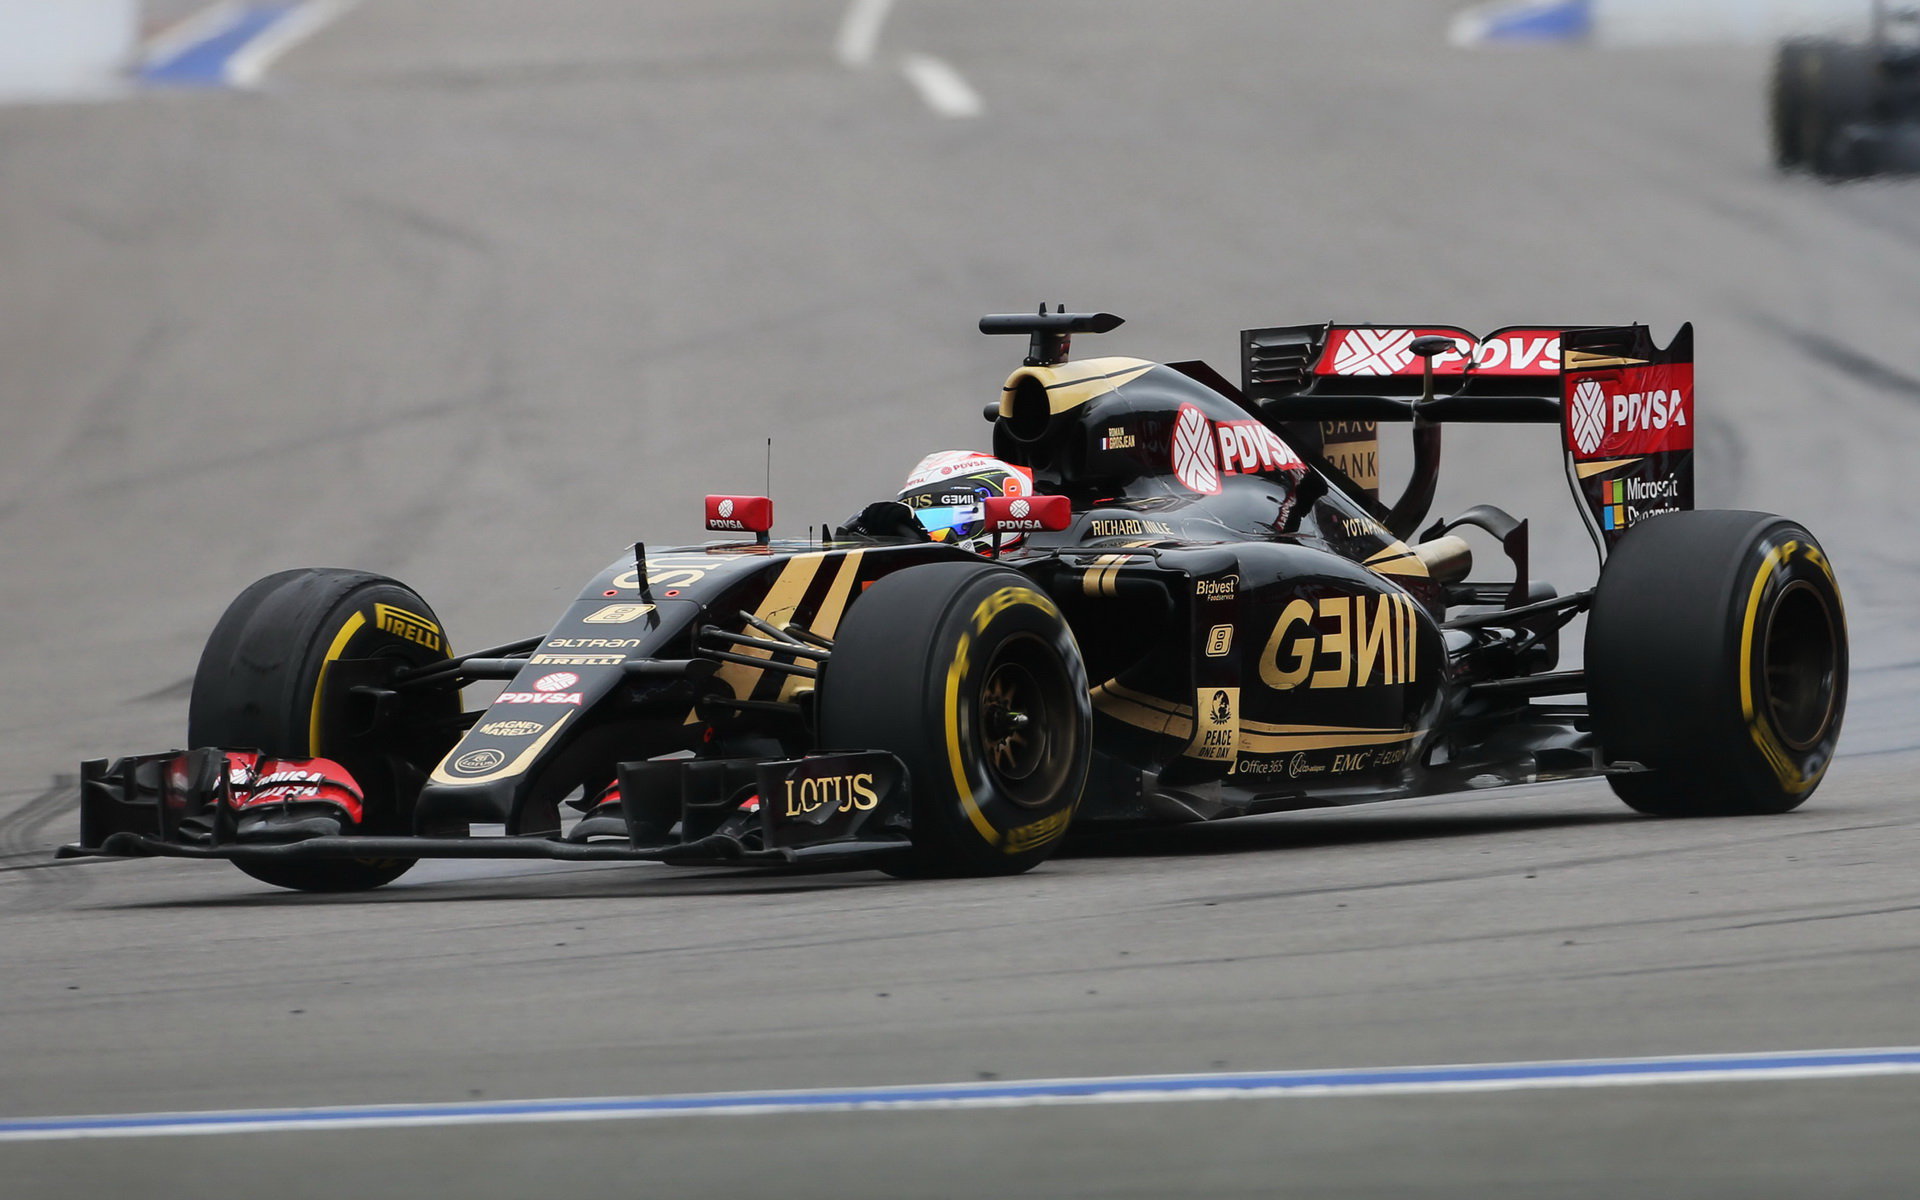 Jedinou jistotou u Lotusu je skutečnost, že Grosjean odchází a Maldonado zůstává